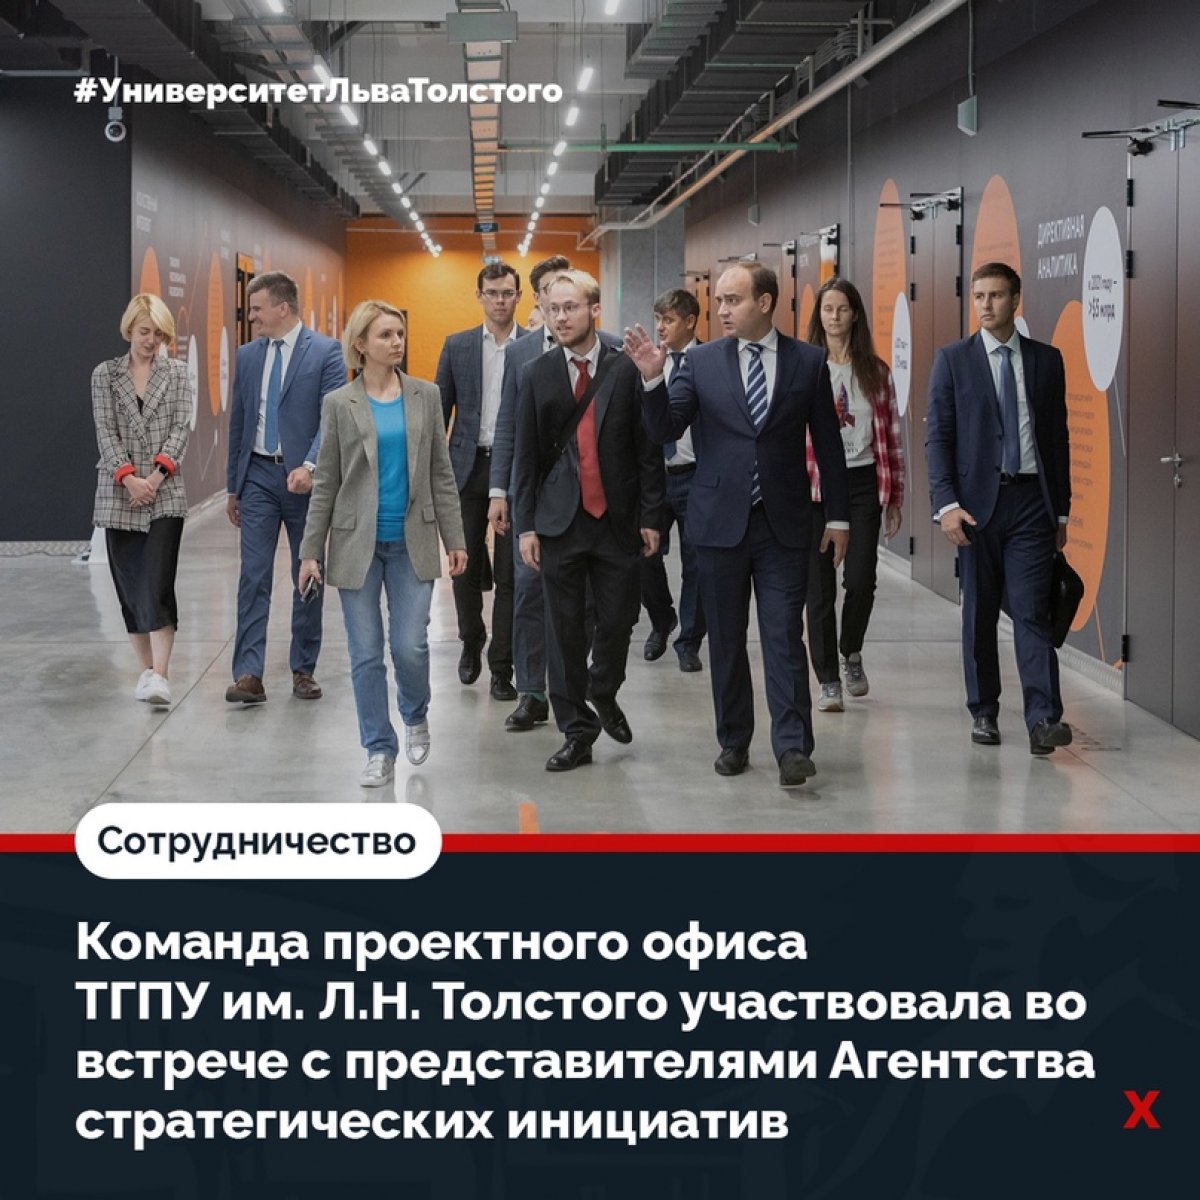 Команда проектного офиса ТГПУ им. Л.Н, Толстого участвовала во встрече с представителями Агентства стратегических инициатив и молодыми предпринимателями Тульской области 🖇